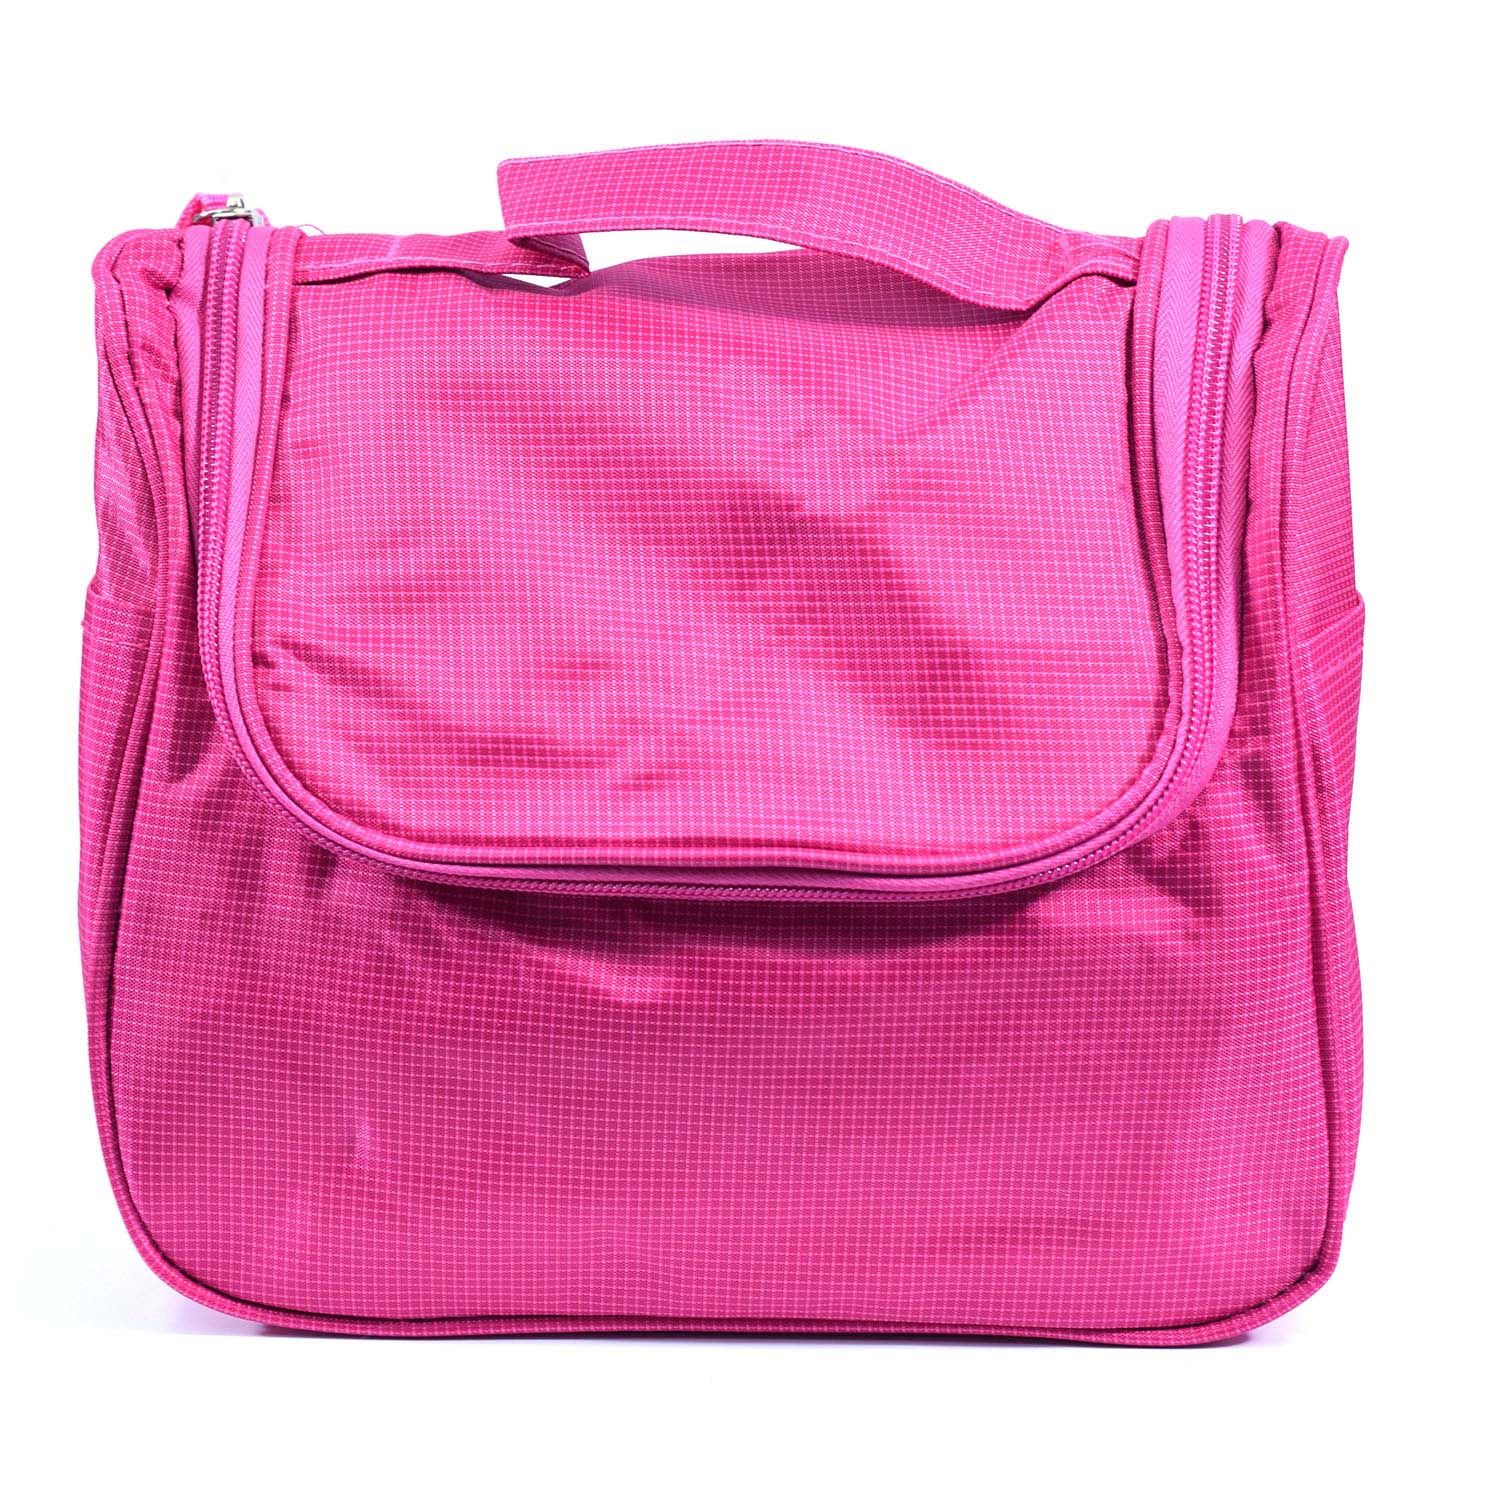 Buy Bonjour Paris Coat Me Premium Multi Purpose Makeup Bag / Travel Case Unisex , Pink - Purplle